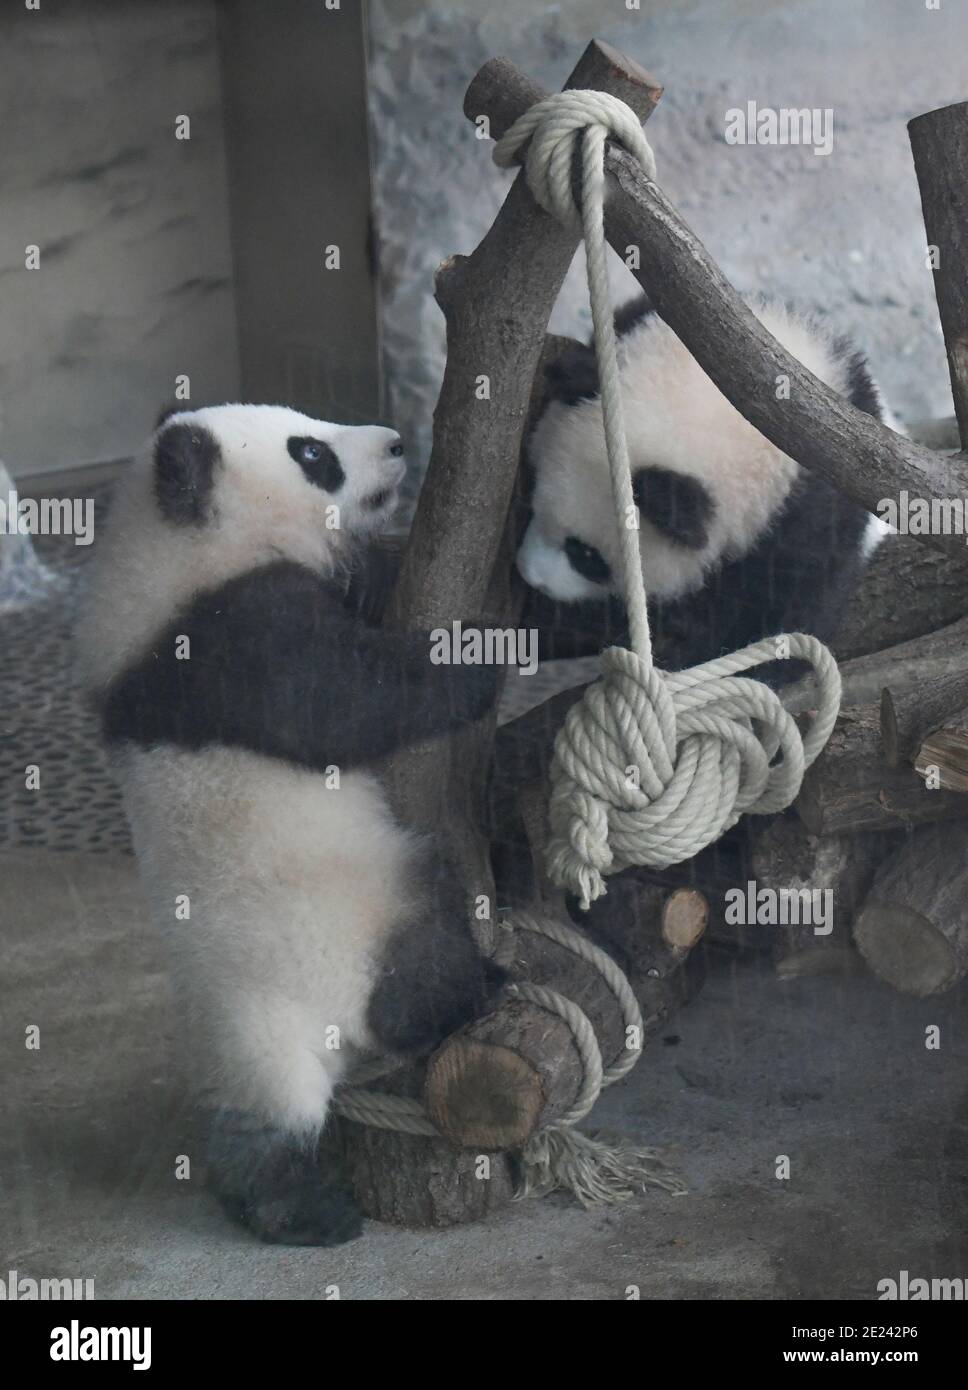 Berlin, 14.02.2020: Zwei Wochen nach dem Einzug der Pandas in ihr neues Gehege kehrt Normalität ein. Die Zwillinge Meng Xiang und Meng Yuan alias Pit Stock Photo